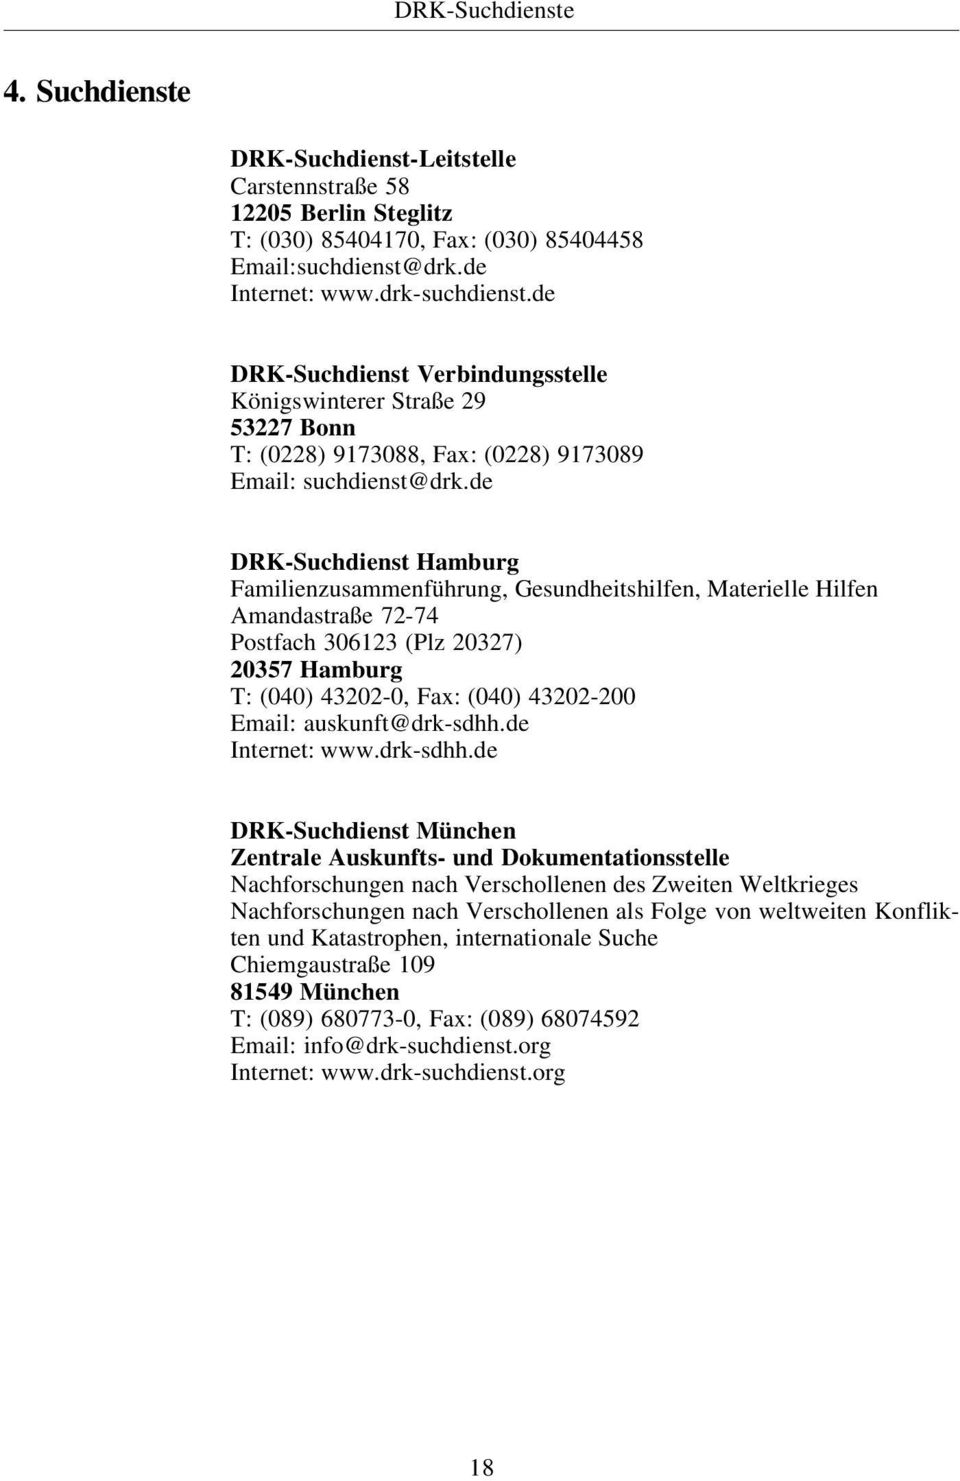 de DRK-Suchdienst Hamburg Familienzusammenführung, Gesundheitshilfen, Materielle Hilfen Amandastraße 72-74 Postfach 306123 (Plz 20327) 20357 Hamburg T: (040) 43202-0, Fax: (040) 43202-200 Email: